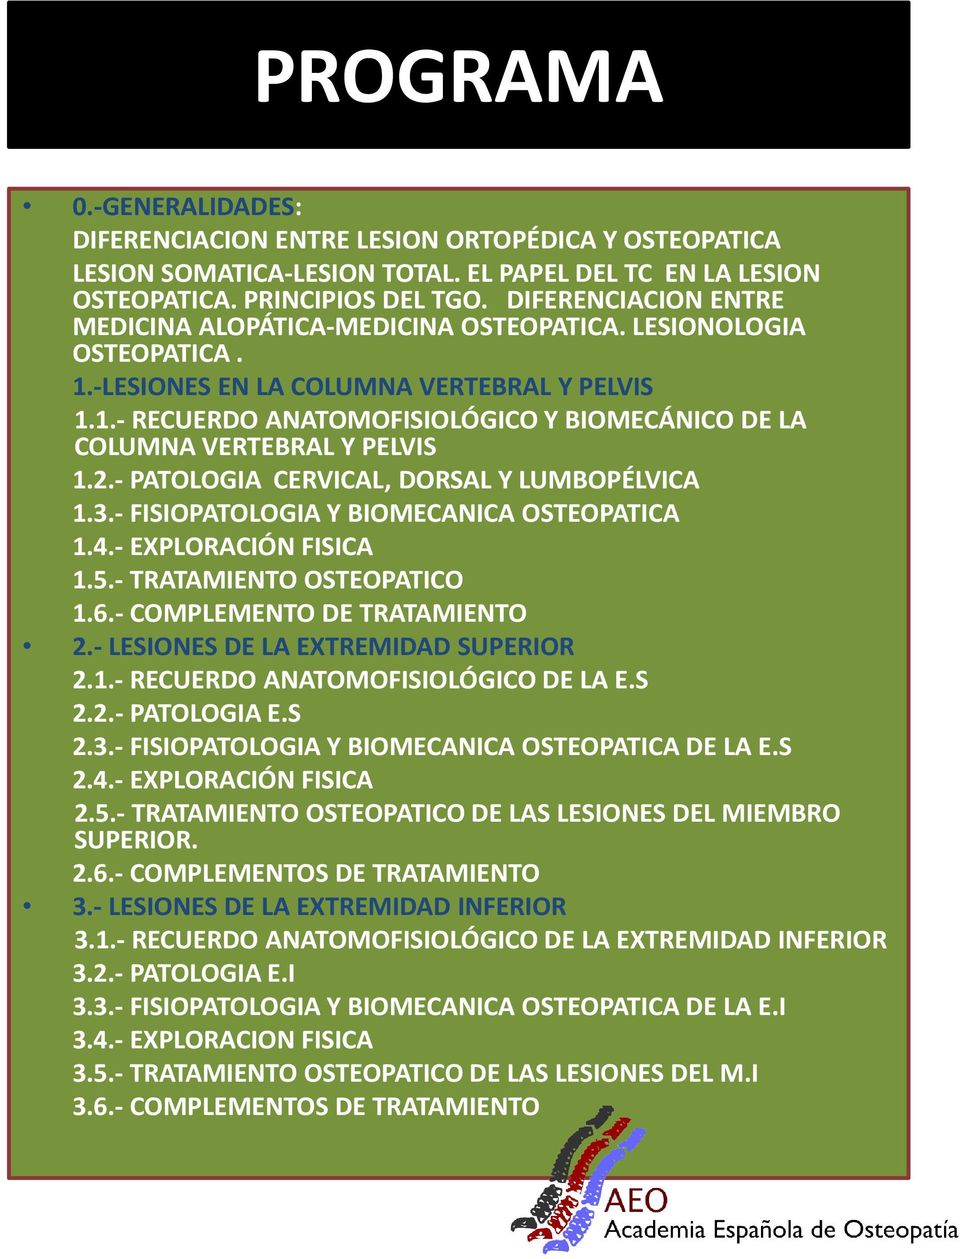 2.- PATOLOGIA CERVICAL, DORSAL Y LUMBOPÉLVICA 1.3.- FISIOPATOLOGIA Y BIOMECANICA OSTEOPATICA 1.4.- EXPLORACIÓN FISICA 1.5.- TRATAMIENTO OSTEOPATICO 1.6.- COMPLEMENTO DE TRATAMIENTO 2.